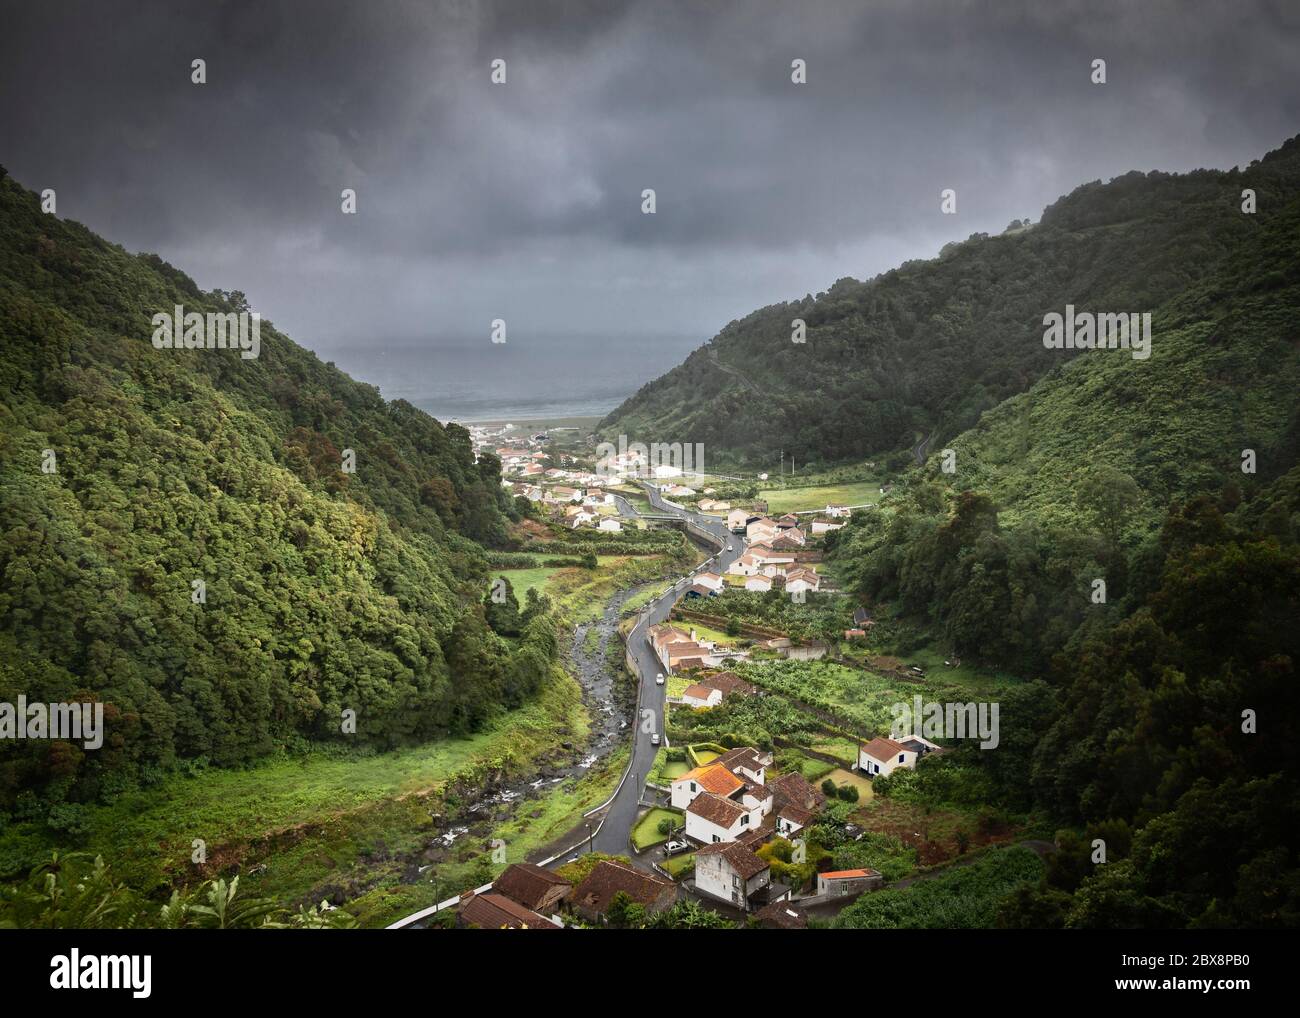 Moody Wetter auf einem Tal in Sao Miguel, Azoren Inseln Stockfoto